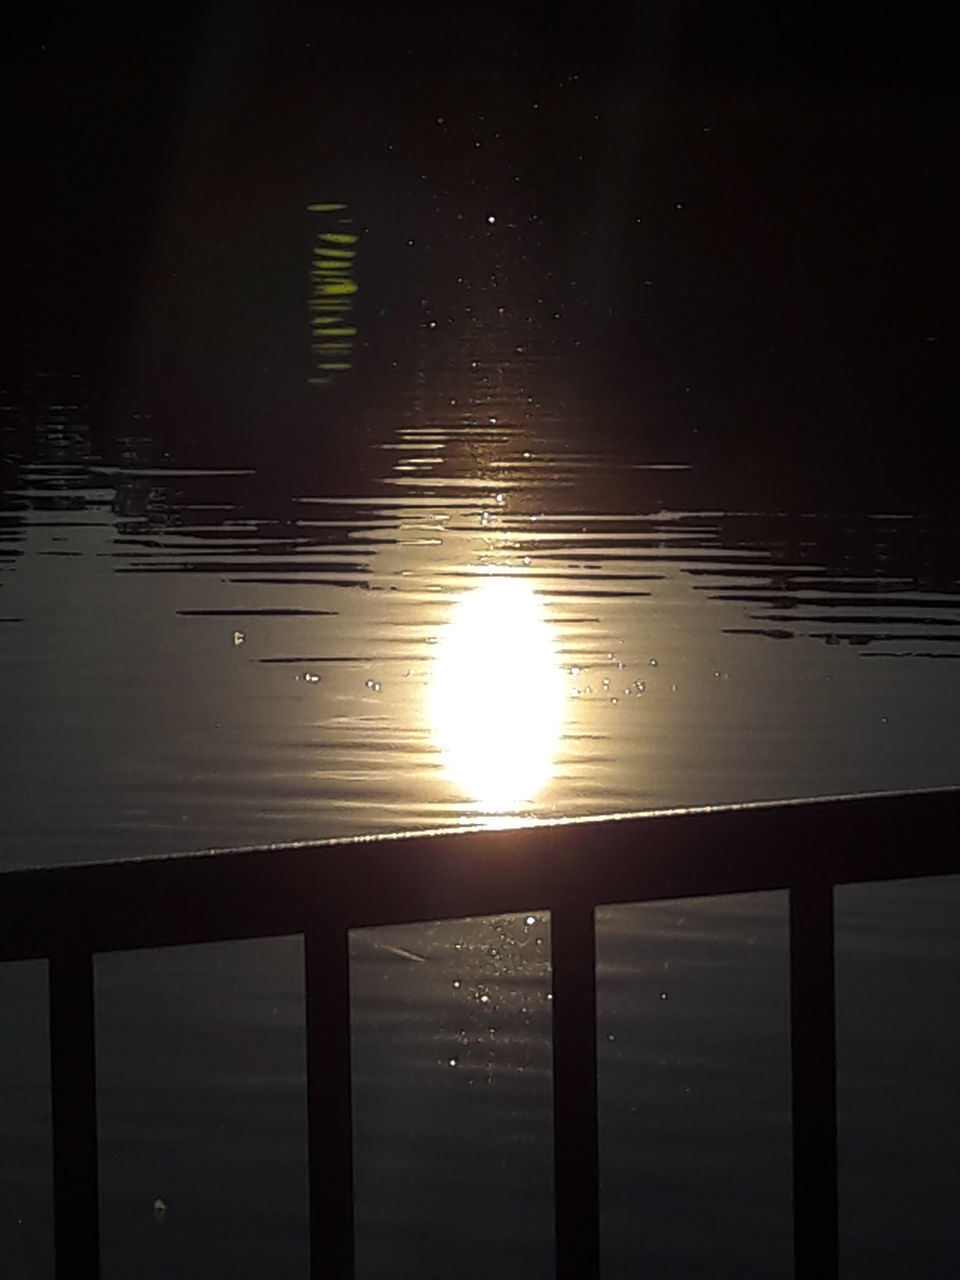 SUN SHINING OVER LAKE DURING SUNSET